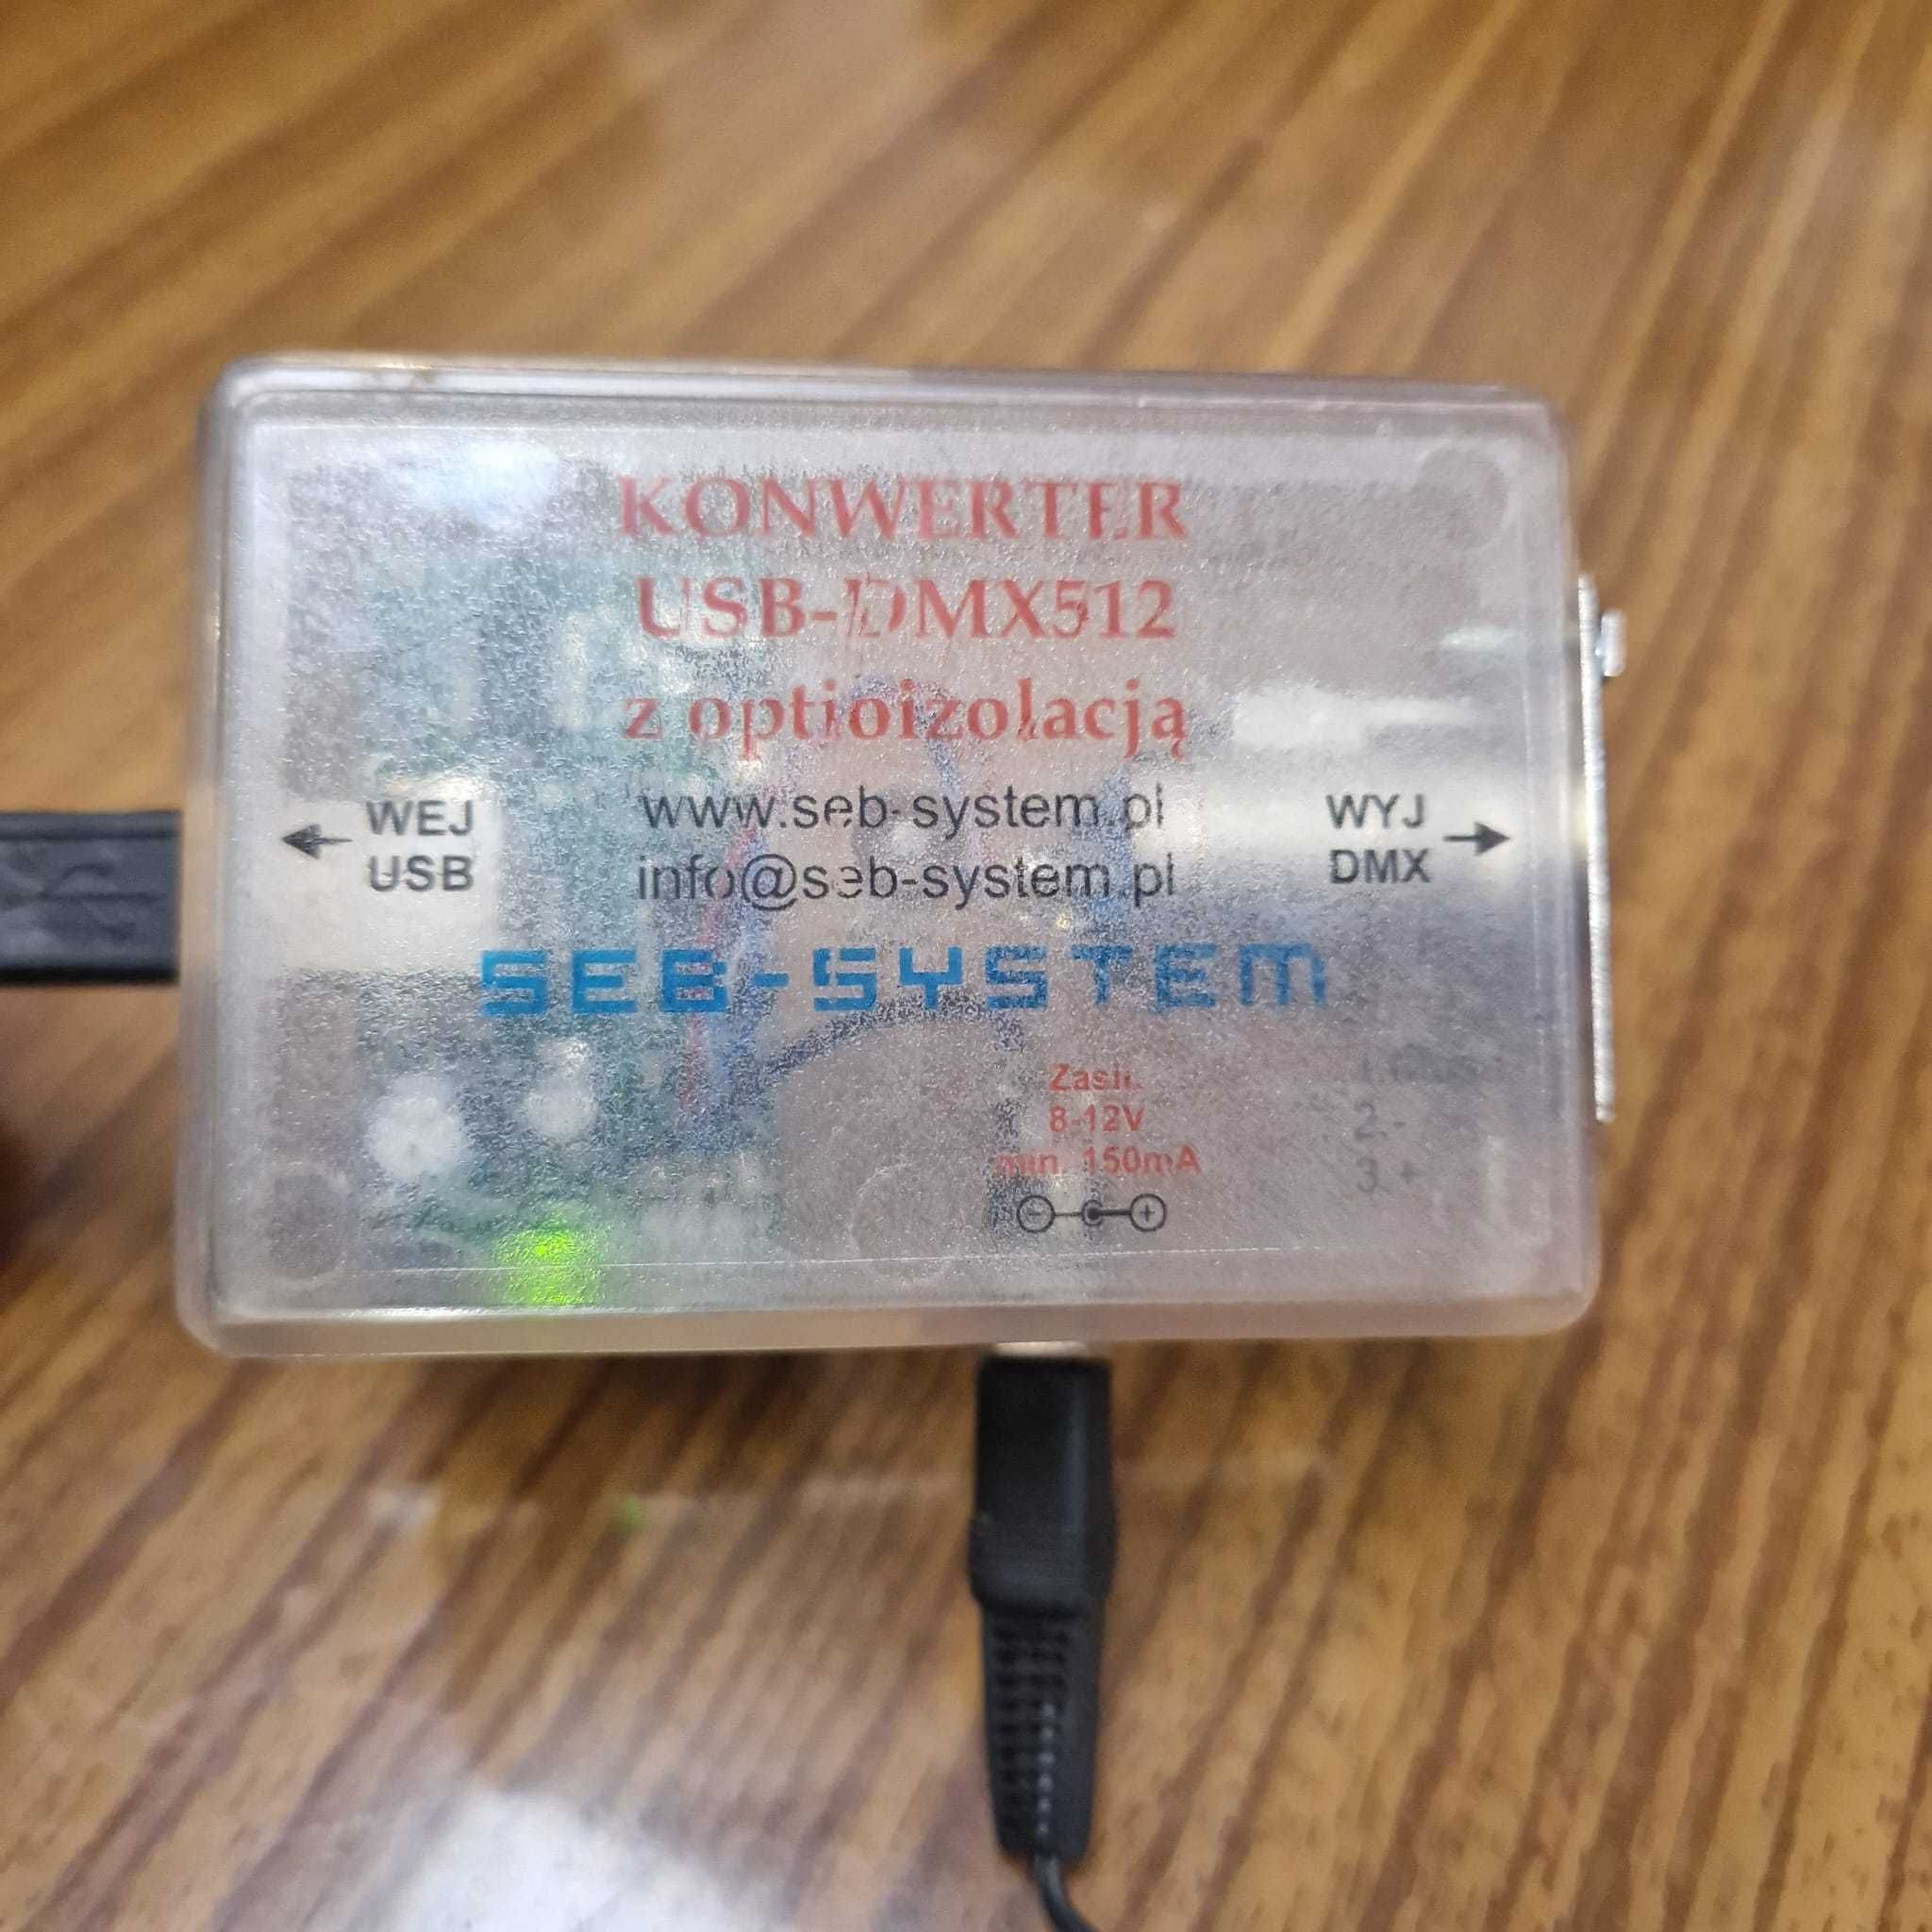 Konwerter USB/DMX512 z optioizolacją + zasilacz 9V- 140mA + przew. USB